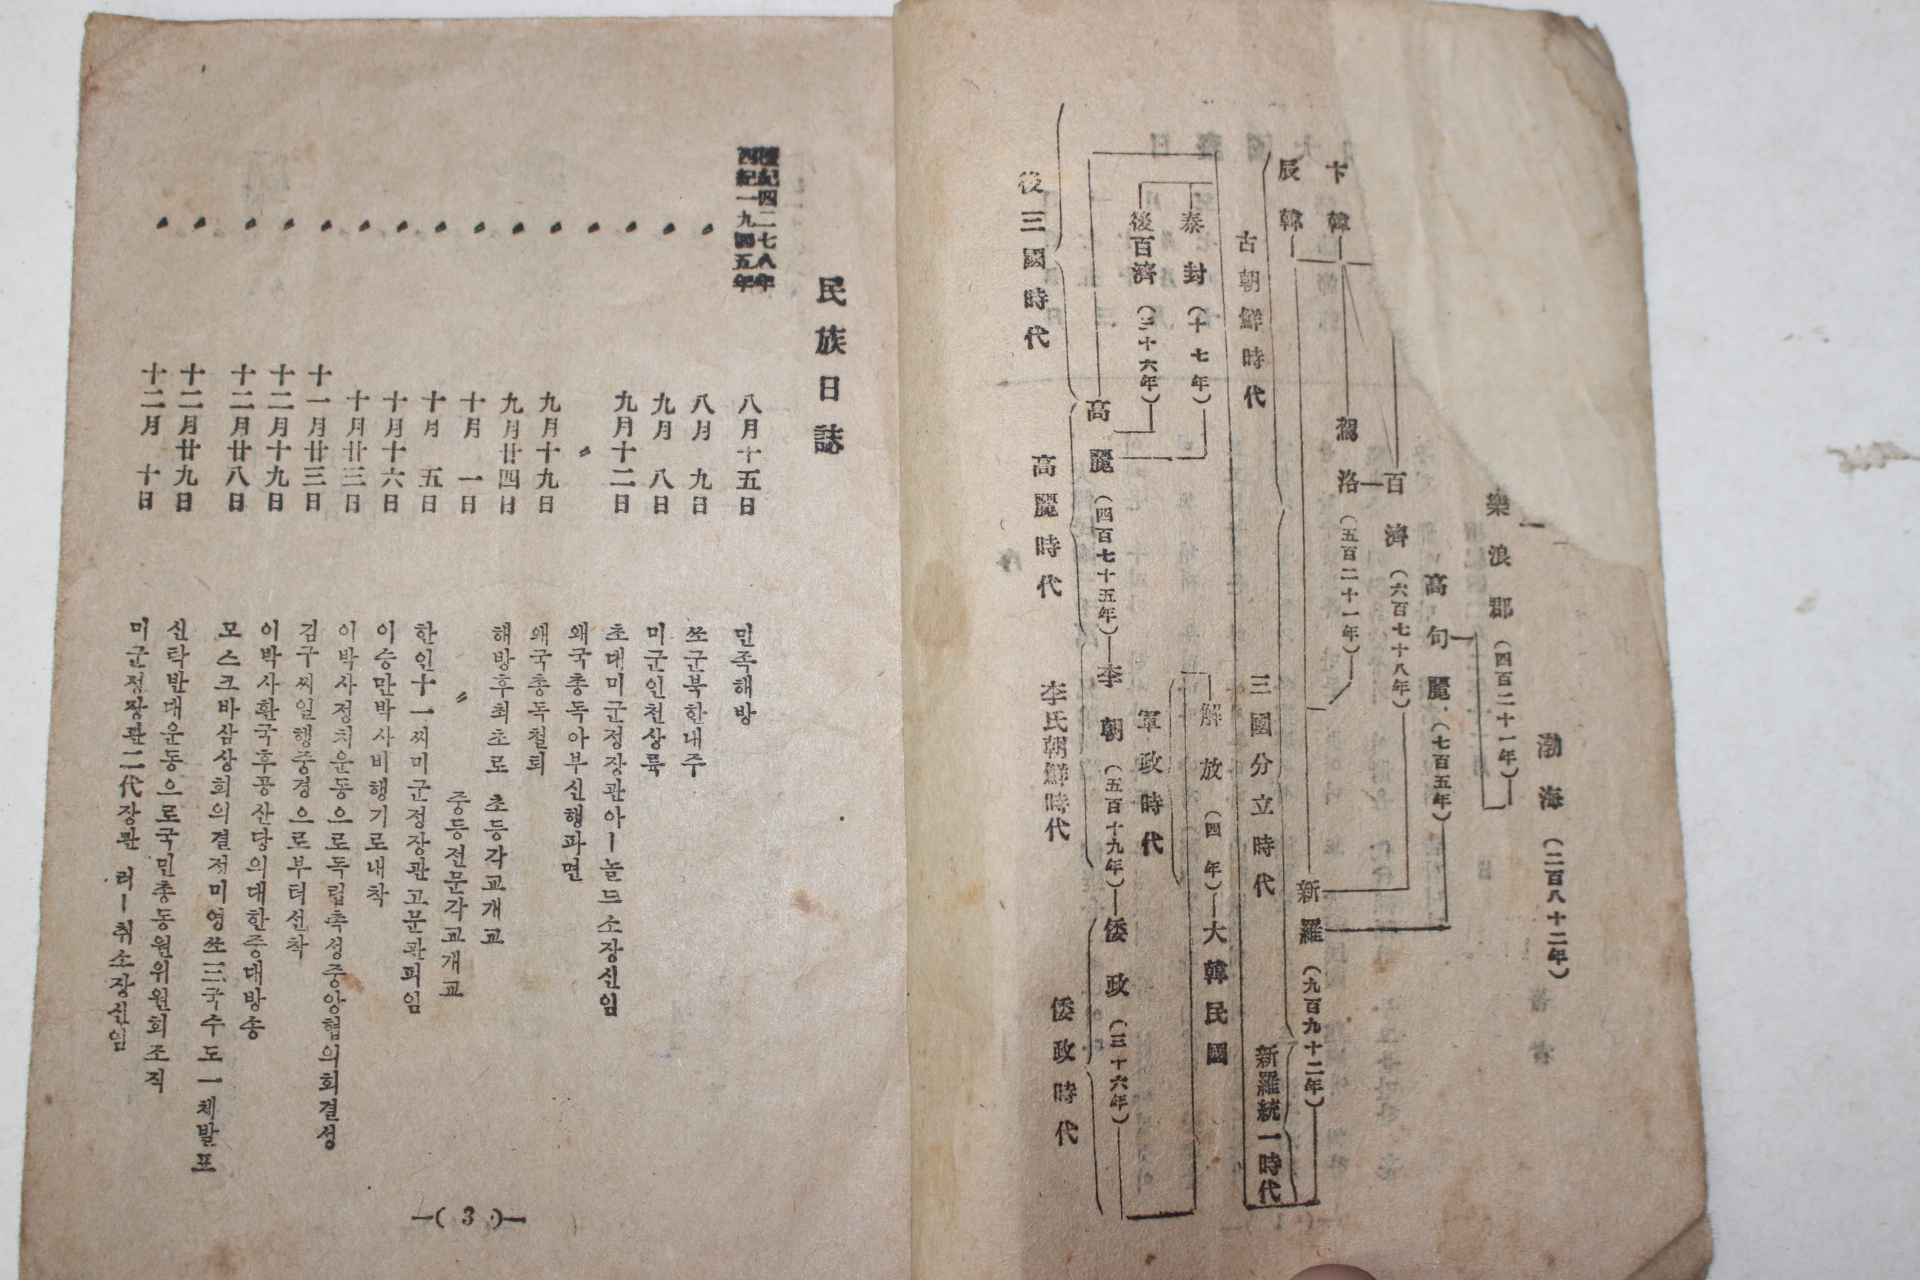 1949년 만병통치자유치료법 국민필독(國民必讀)